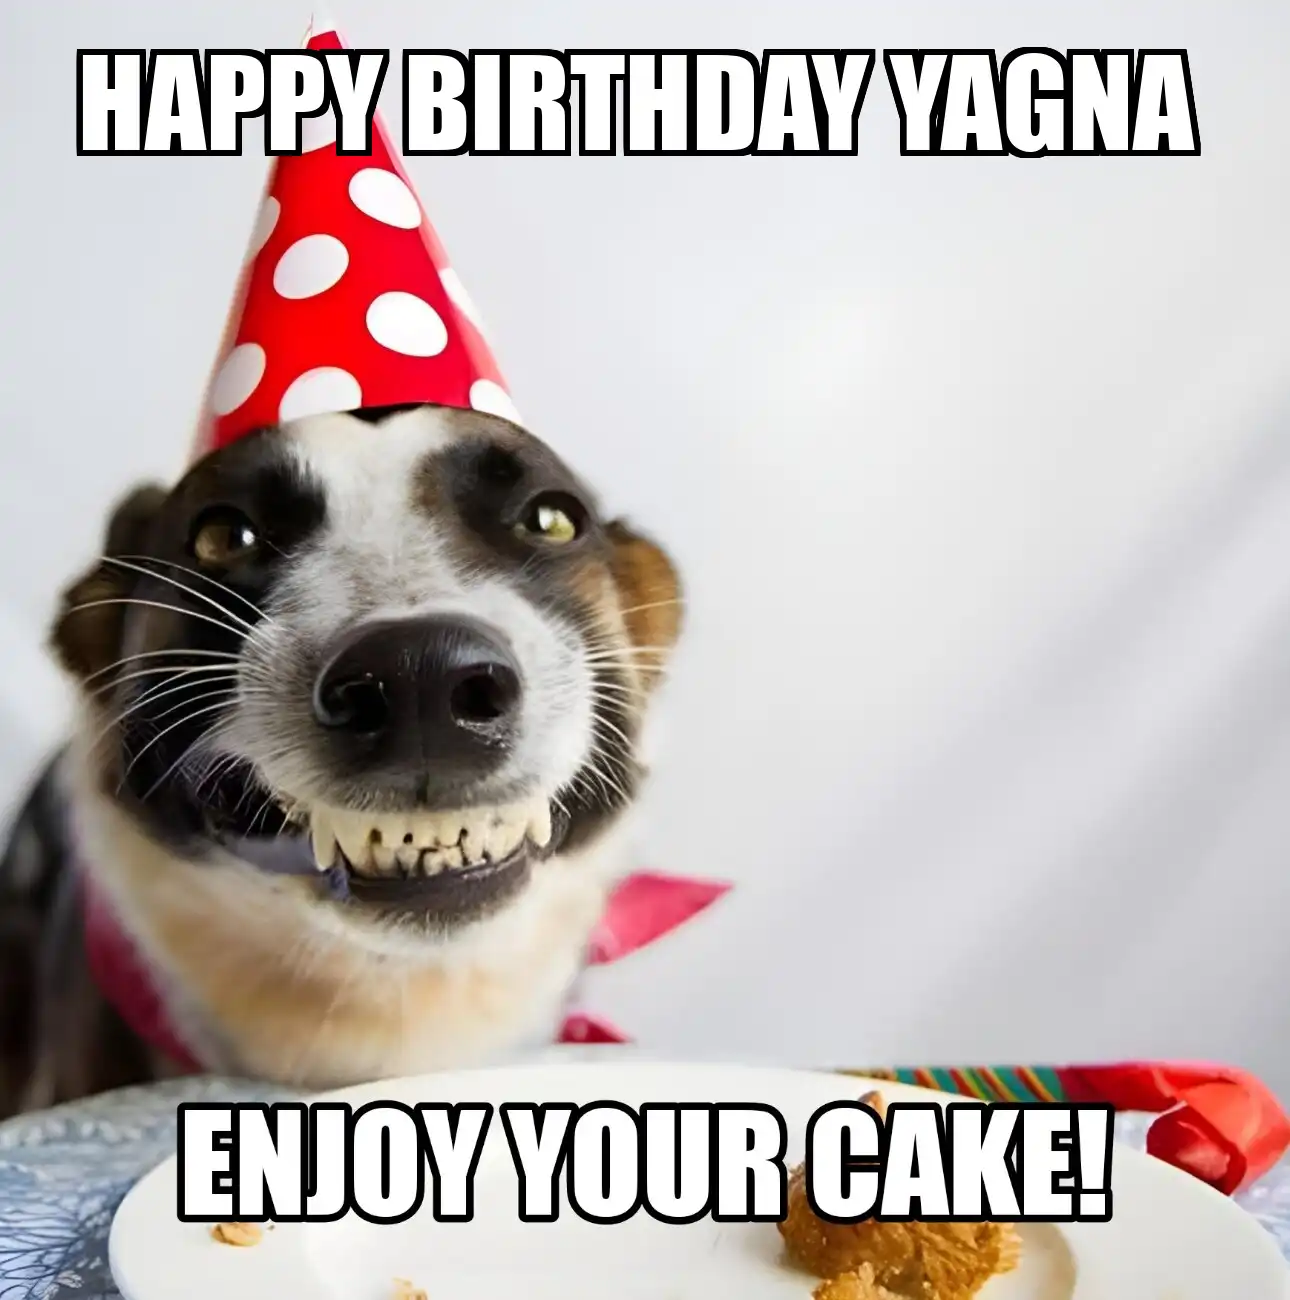 Happy Birthday Yagna Enjoy Your Cake Dog Meme